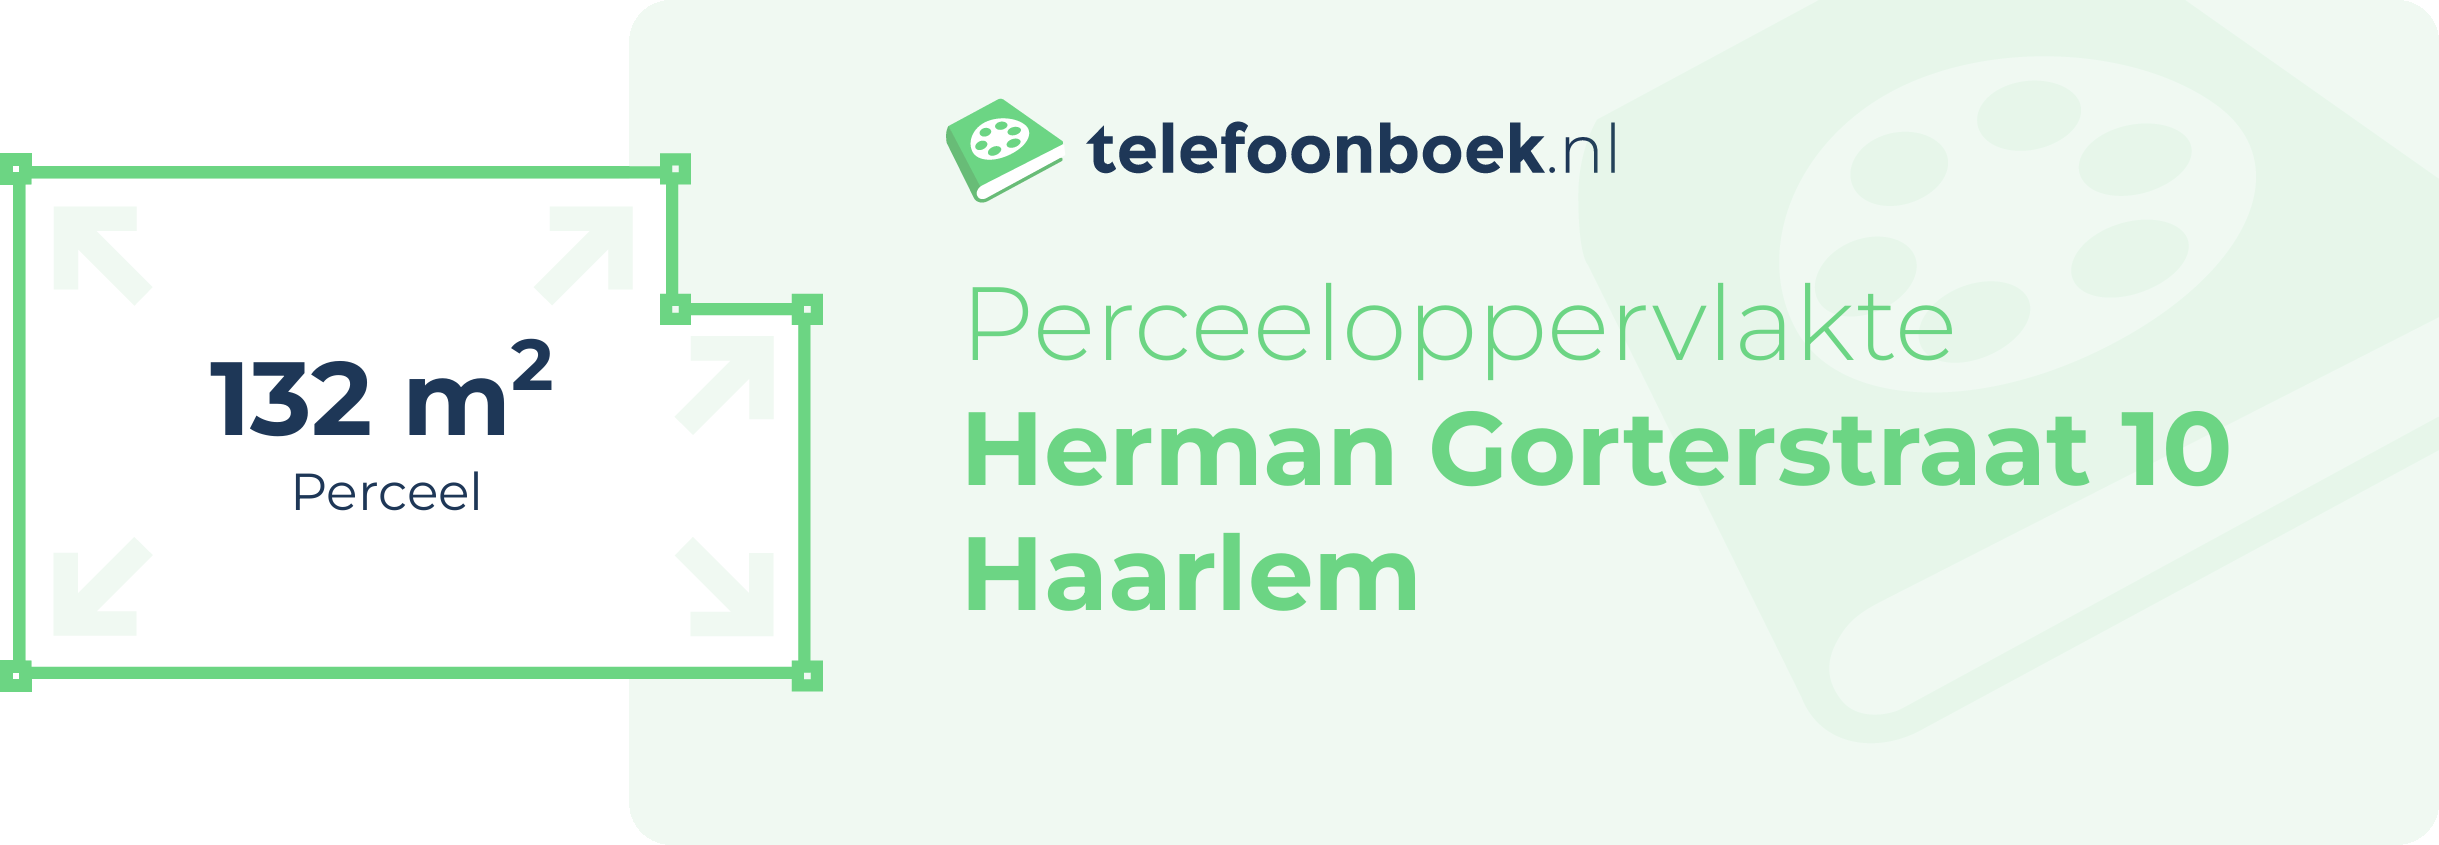 Perceeloppervlakte Herman Gorterstraat 10 Haarlem